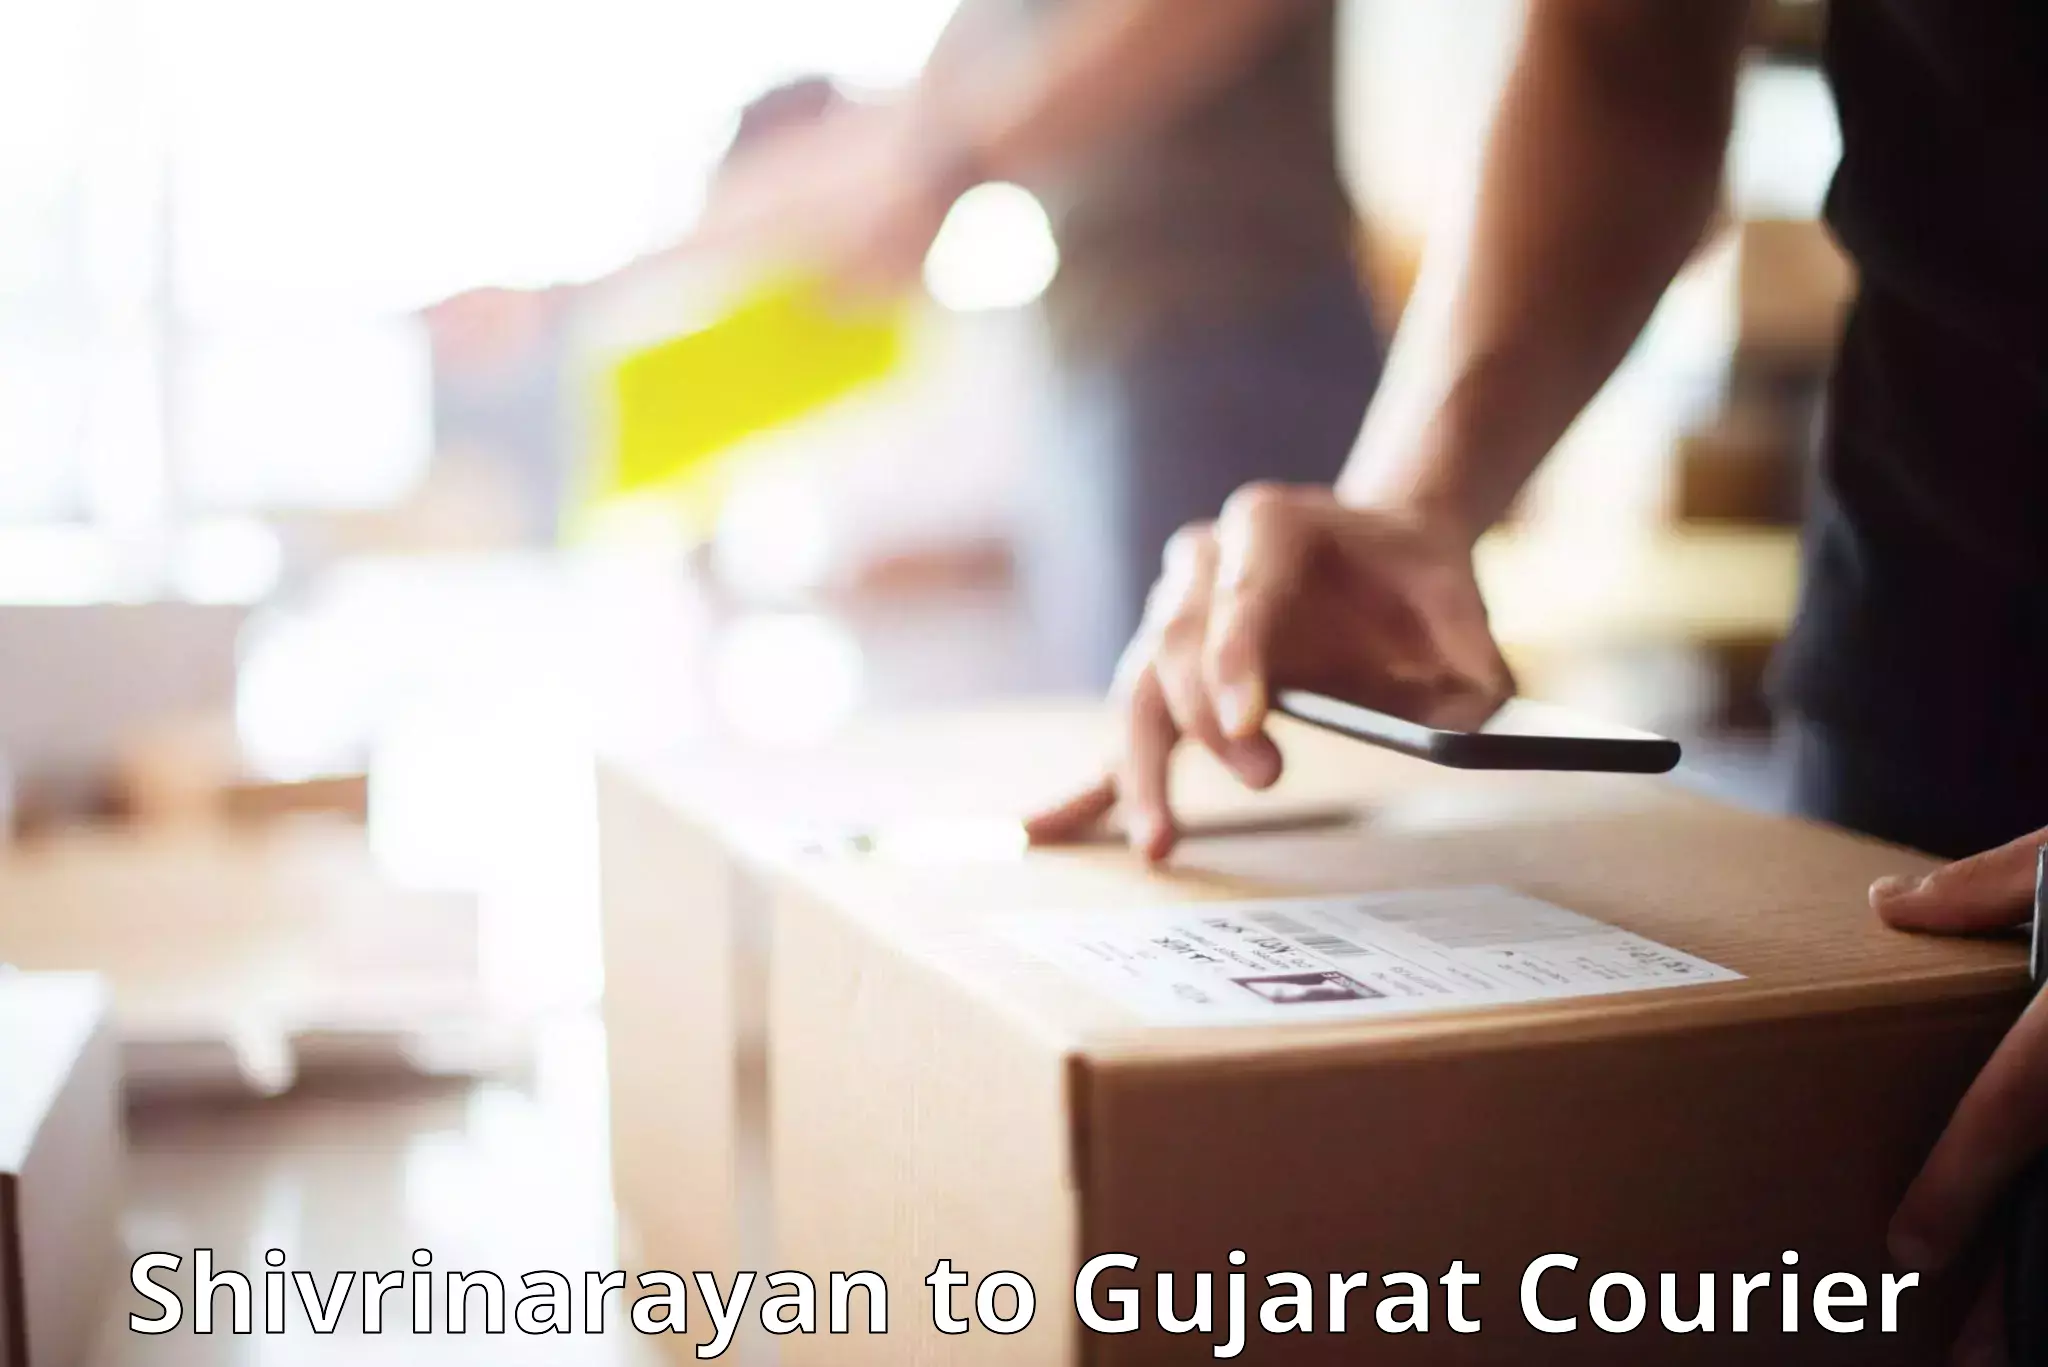 Baggage delivery estimate Shivrinarayan to Gujarat